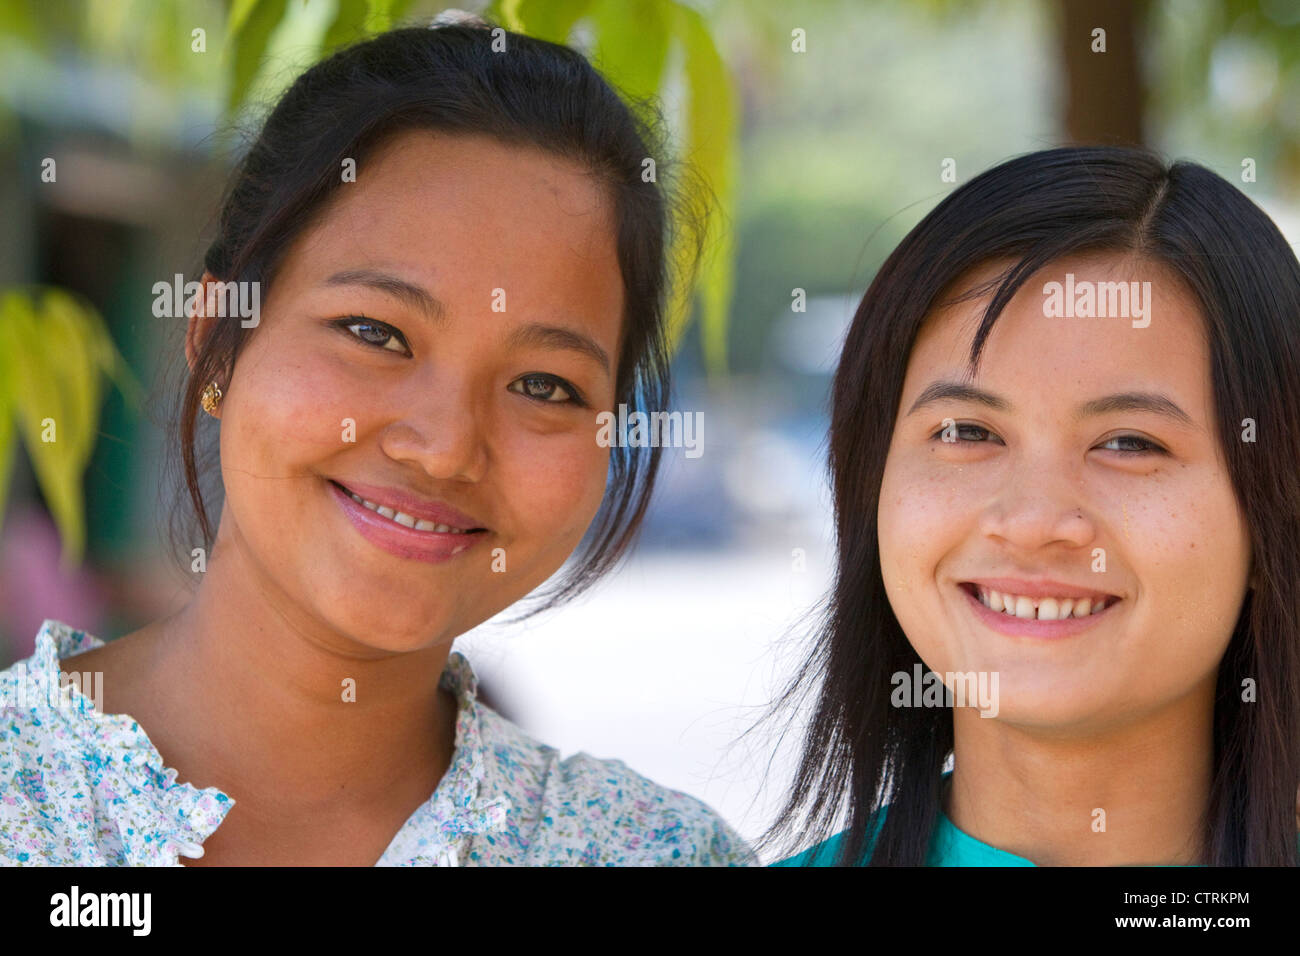 Portrait de deux jeunes filles birmanes à Yangon (Rangoon), la Birmanie (Myanmar). Banque D'Images